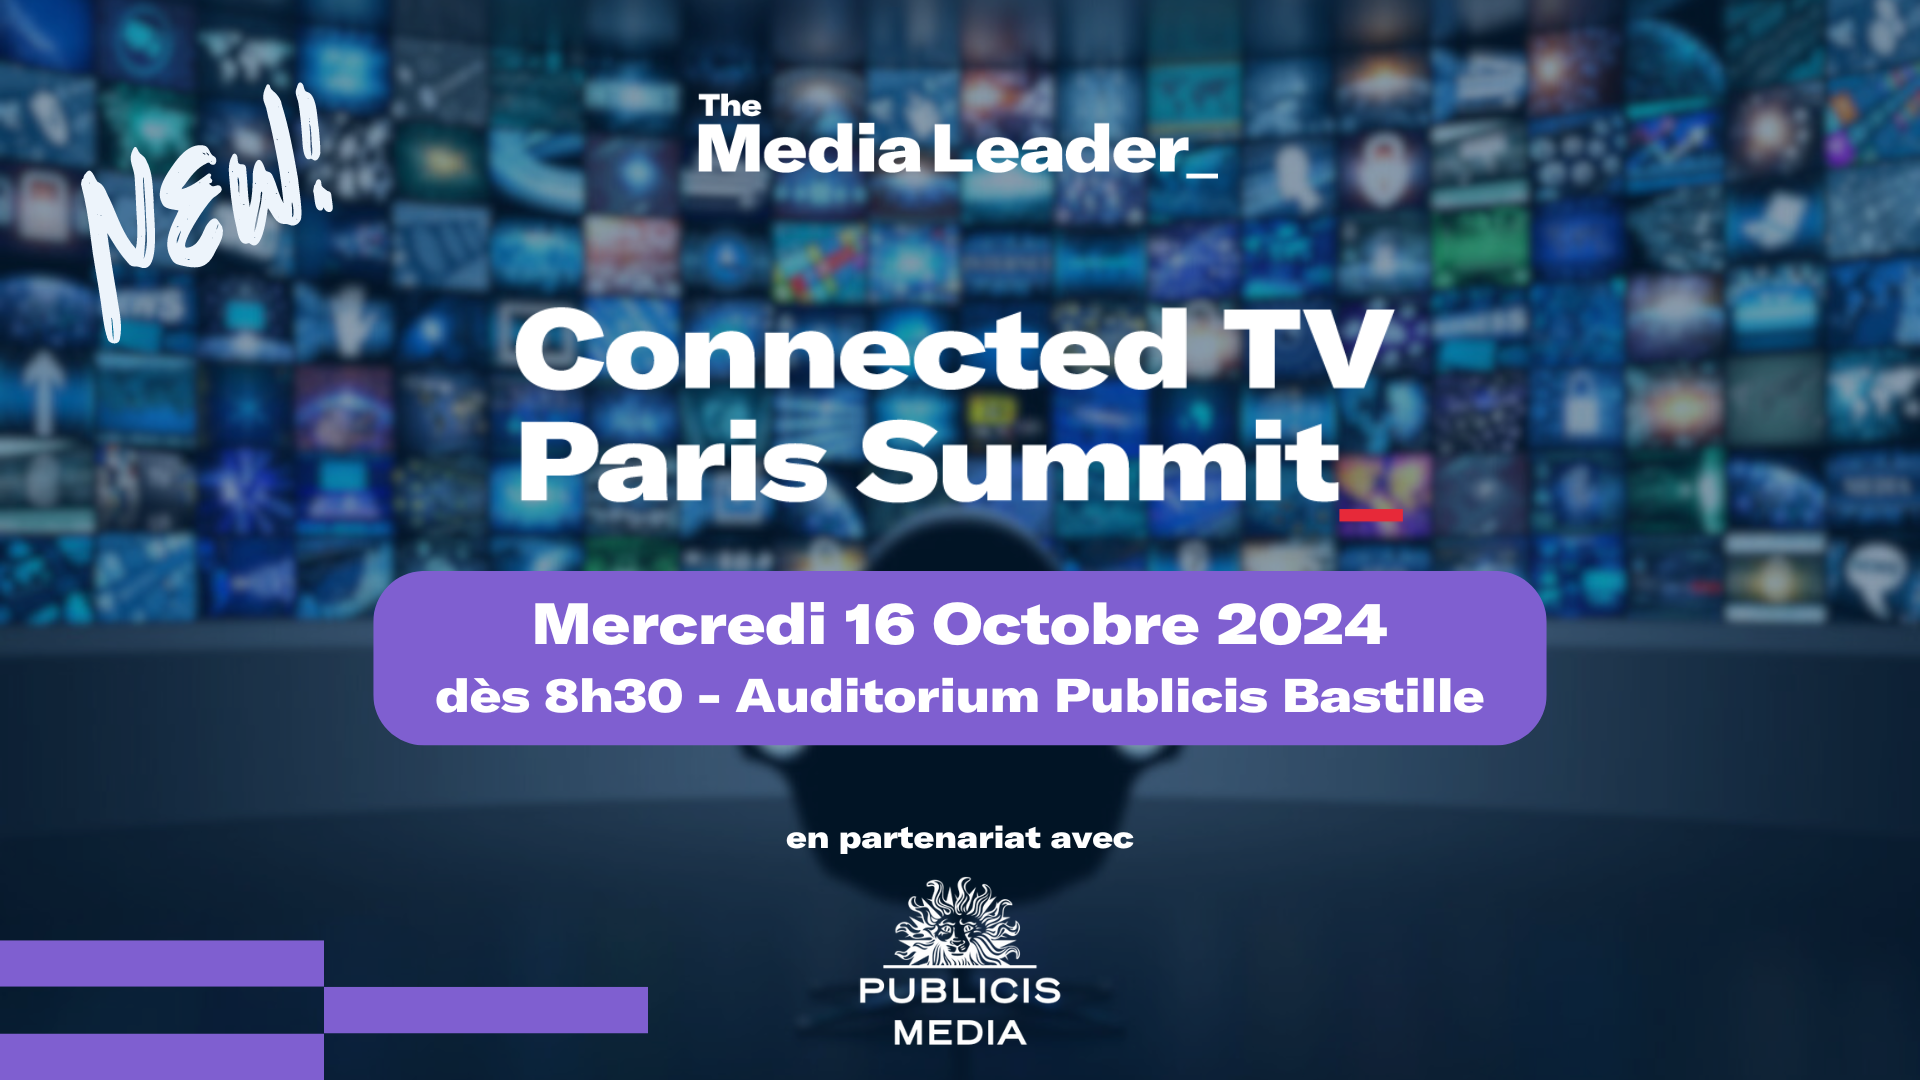 Connected TV Summit arrive à Paris : rendez-vous mercredi 16 octobre